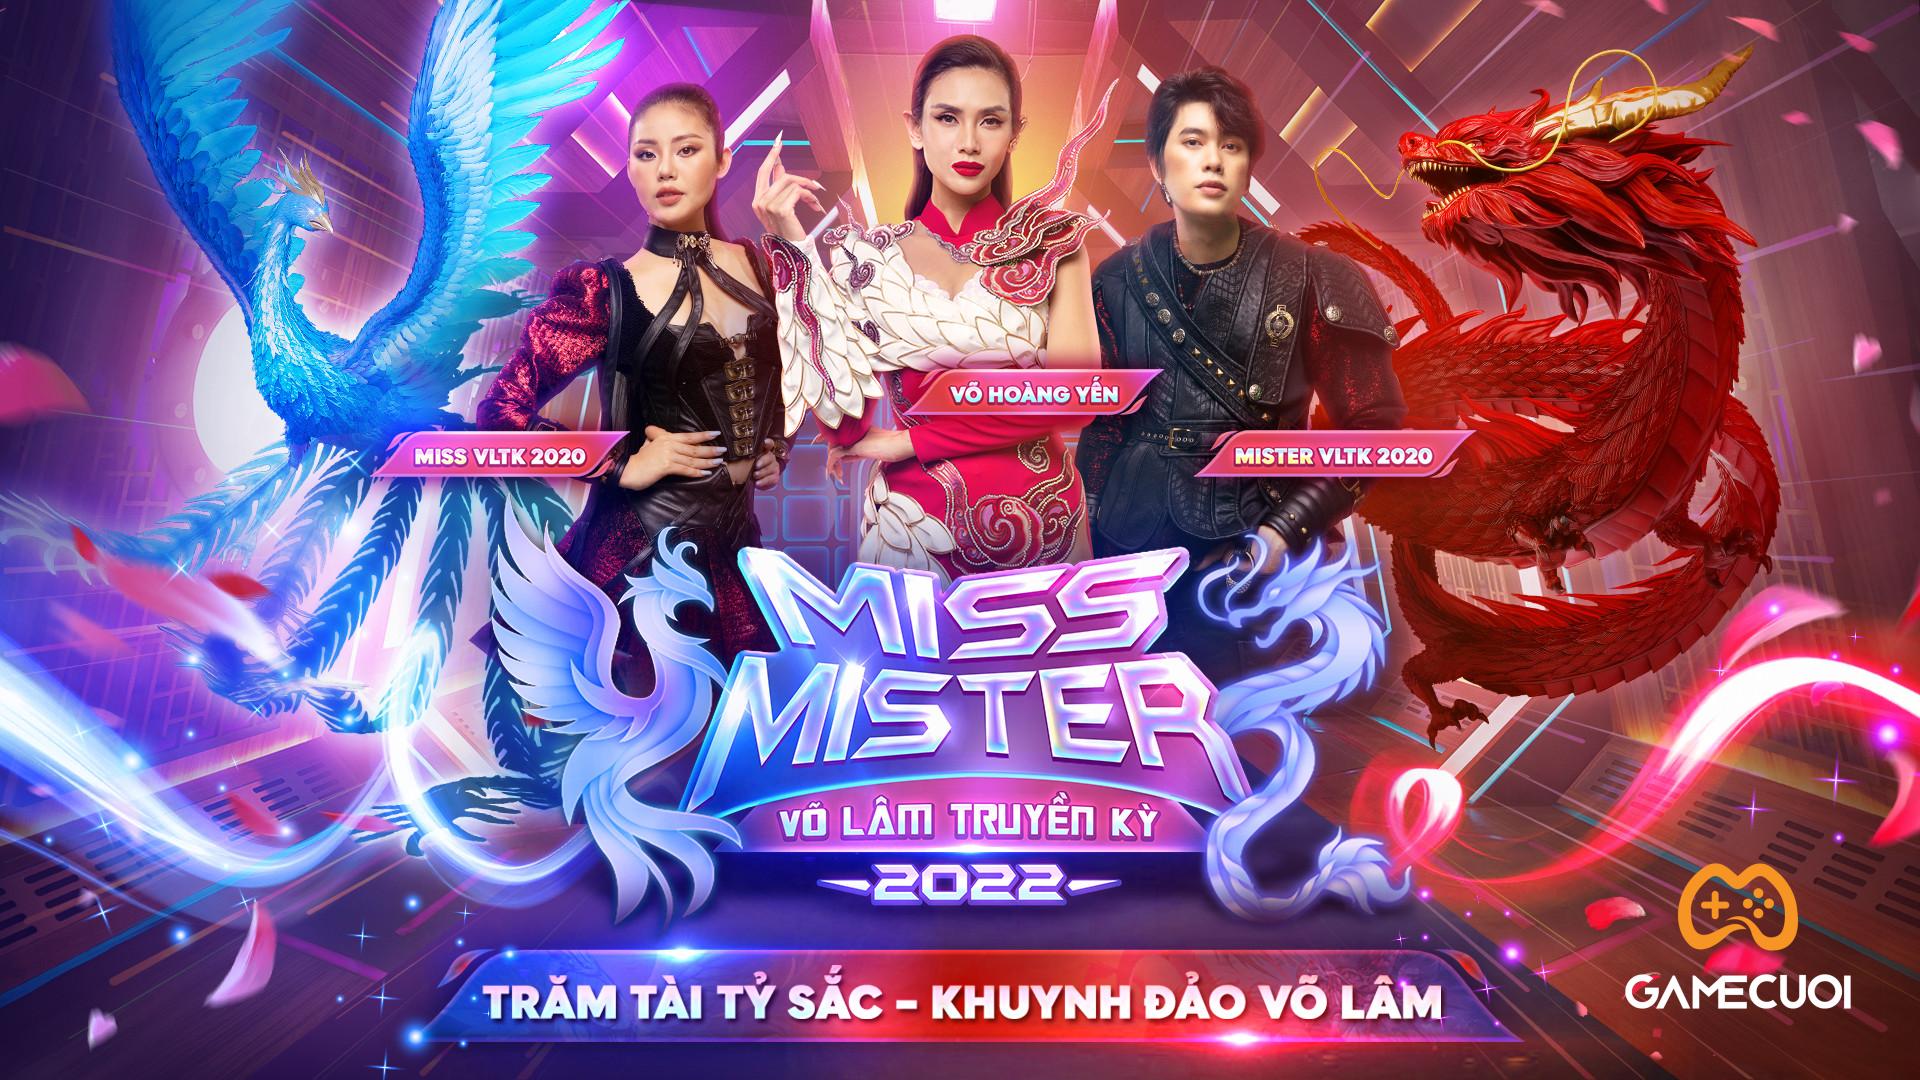 Sàn đấu sắc đẹp Miss & Mister Võ Lâm Truyền Kỳ 2022 trở lại với tổng giá trị giải thưởng lên đến 45 tỷ đồng